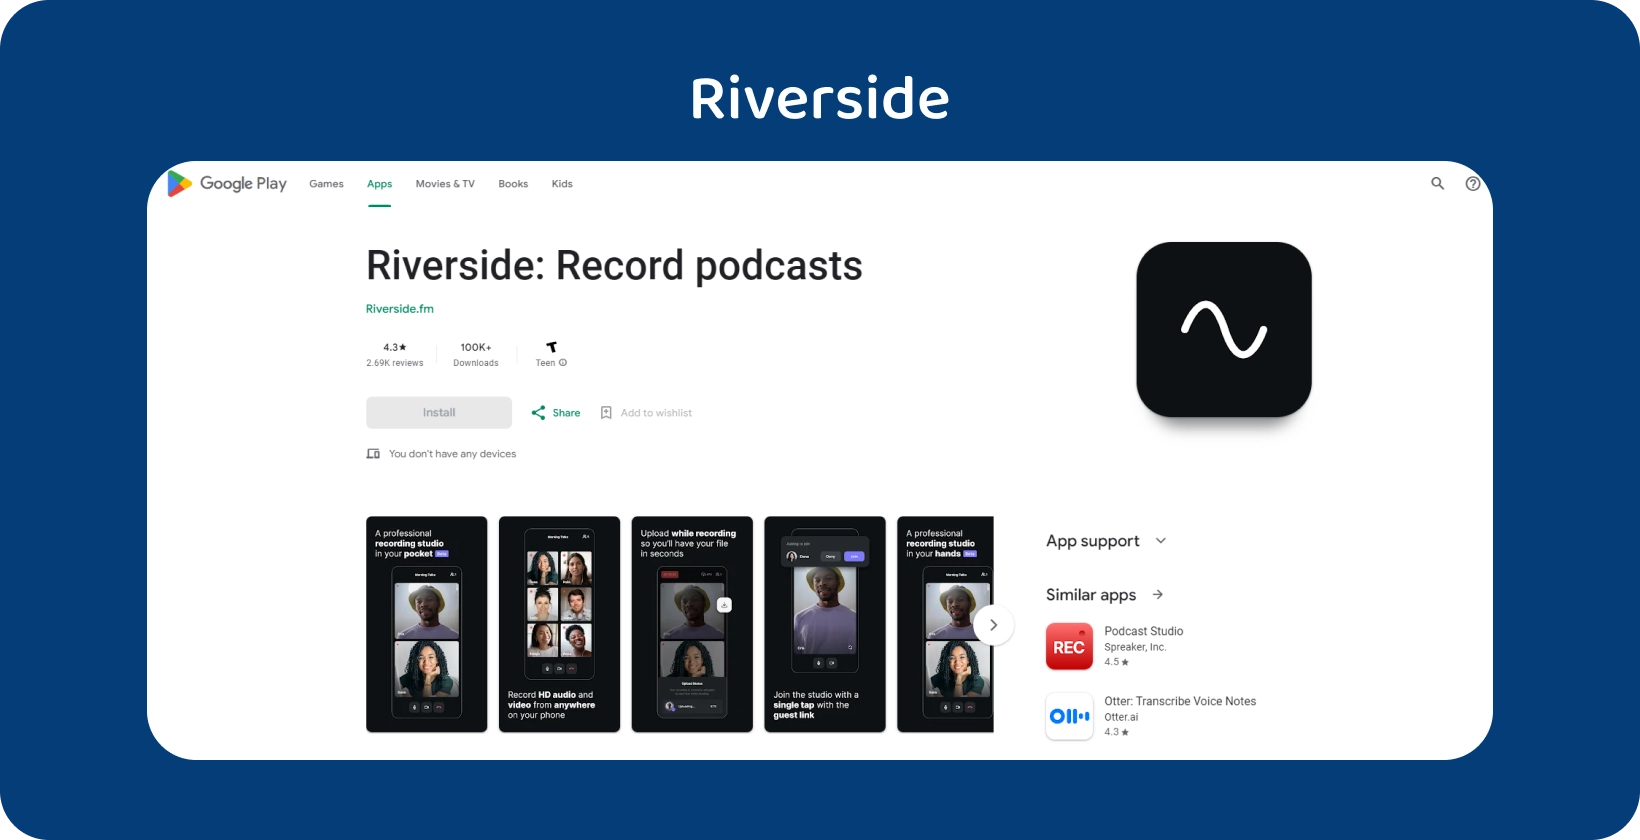 Riverside-inspelningsapp på Google Play med användarvänligt gränssnitt för högkvalitativa ljudsessioner.